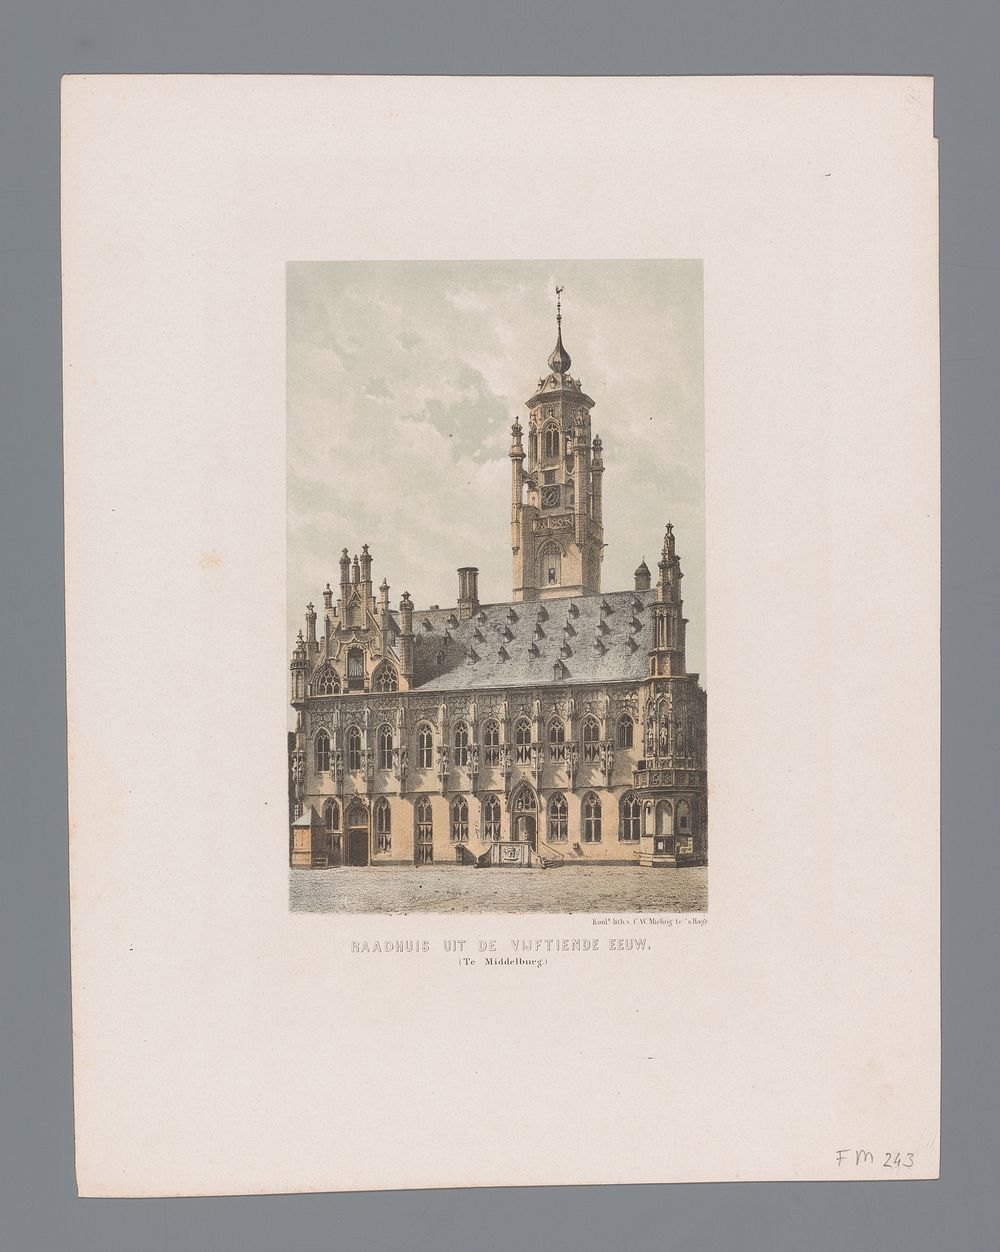 Stadhuis Middelburg (1863) by anonymous, Koninklijke Nederlandse Steendrukkerij van C W Mieling and Arie Cornelis Kruseman